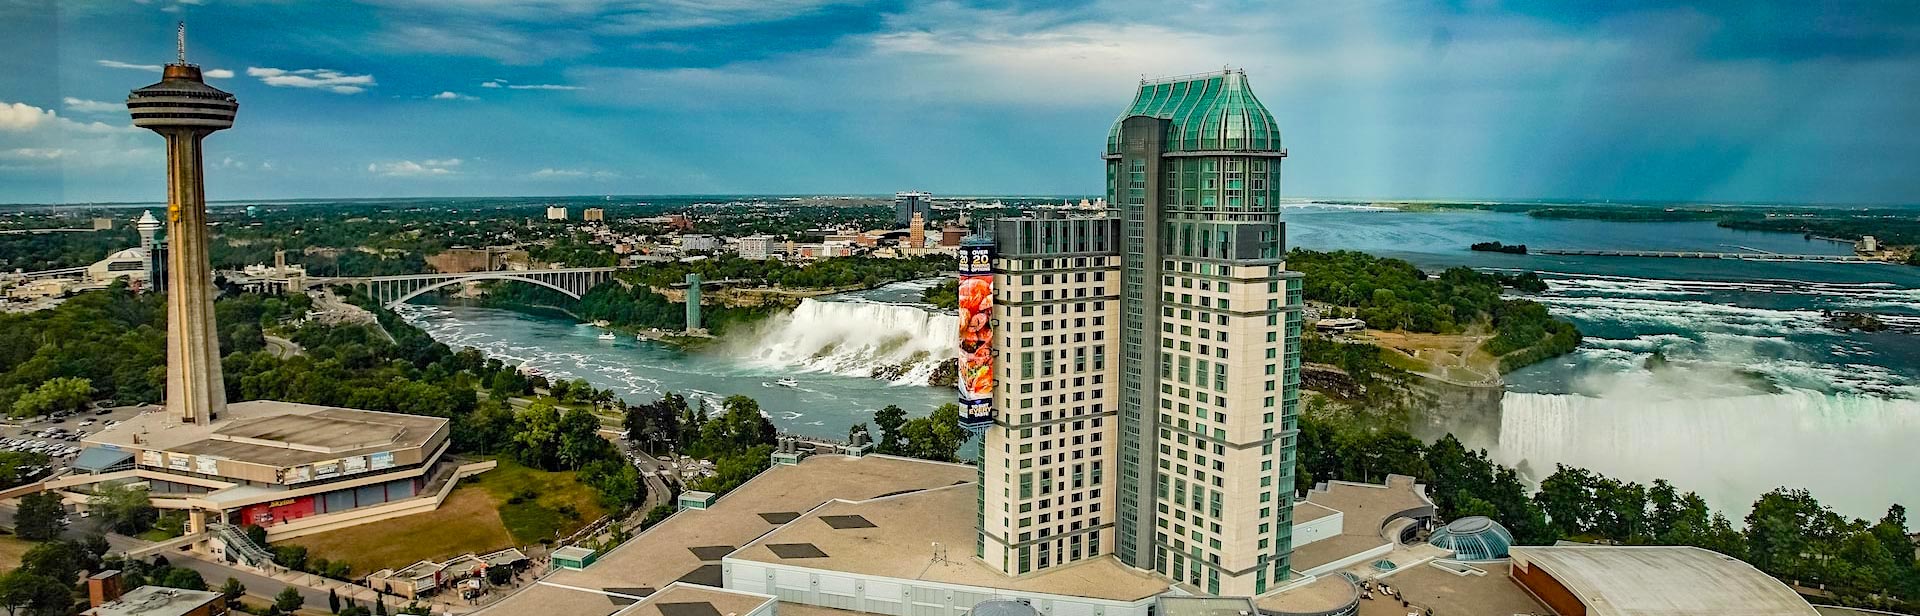 Uitzicht op de Niagara Falls vanuit het gebouw.